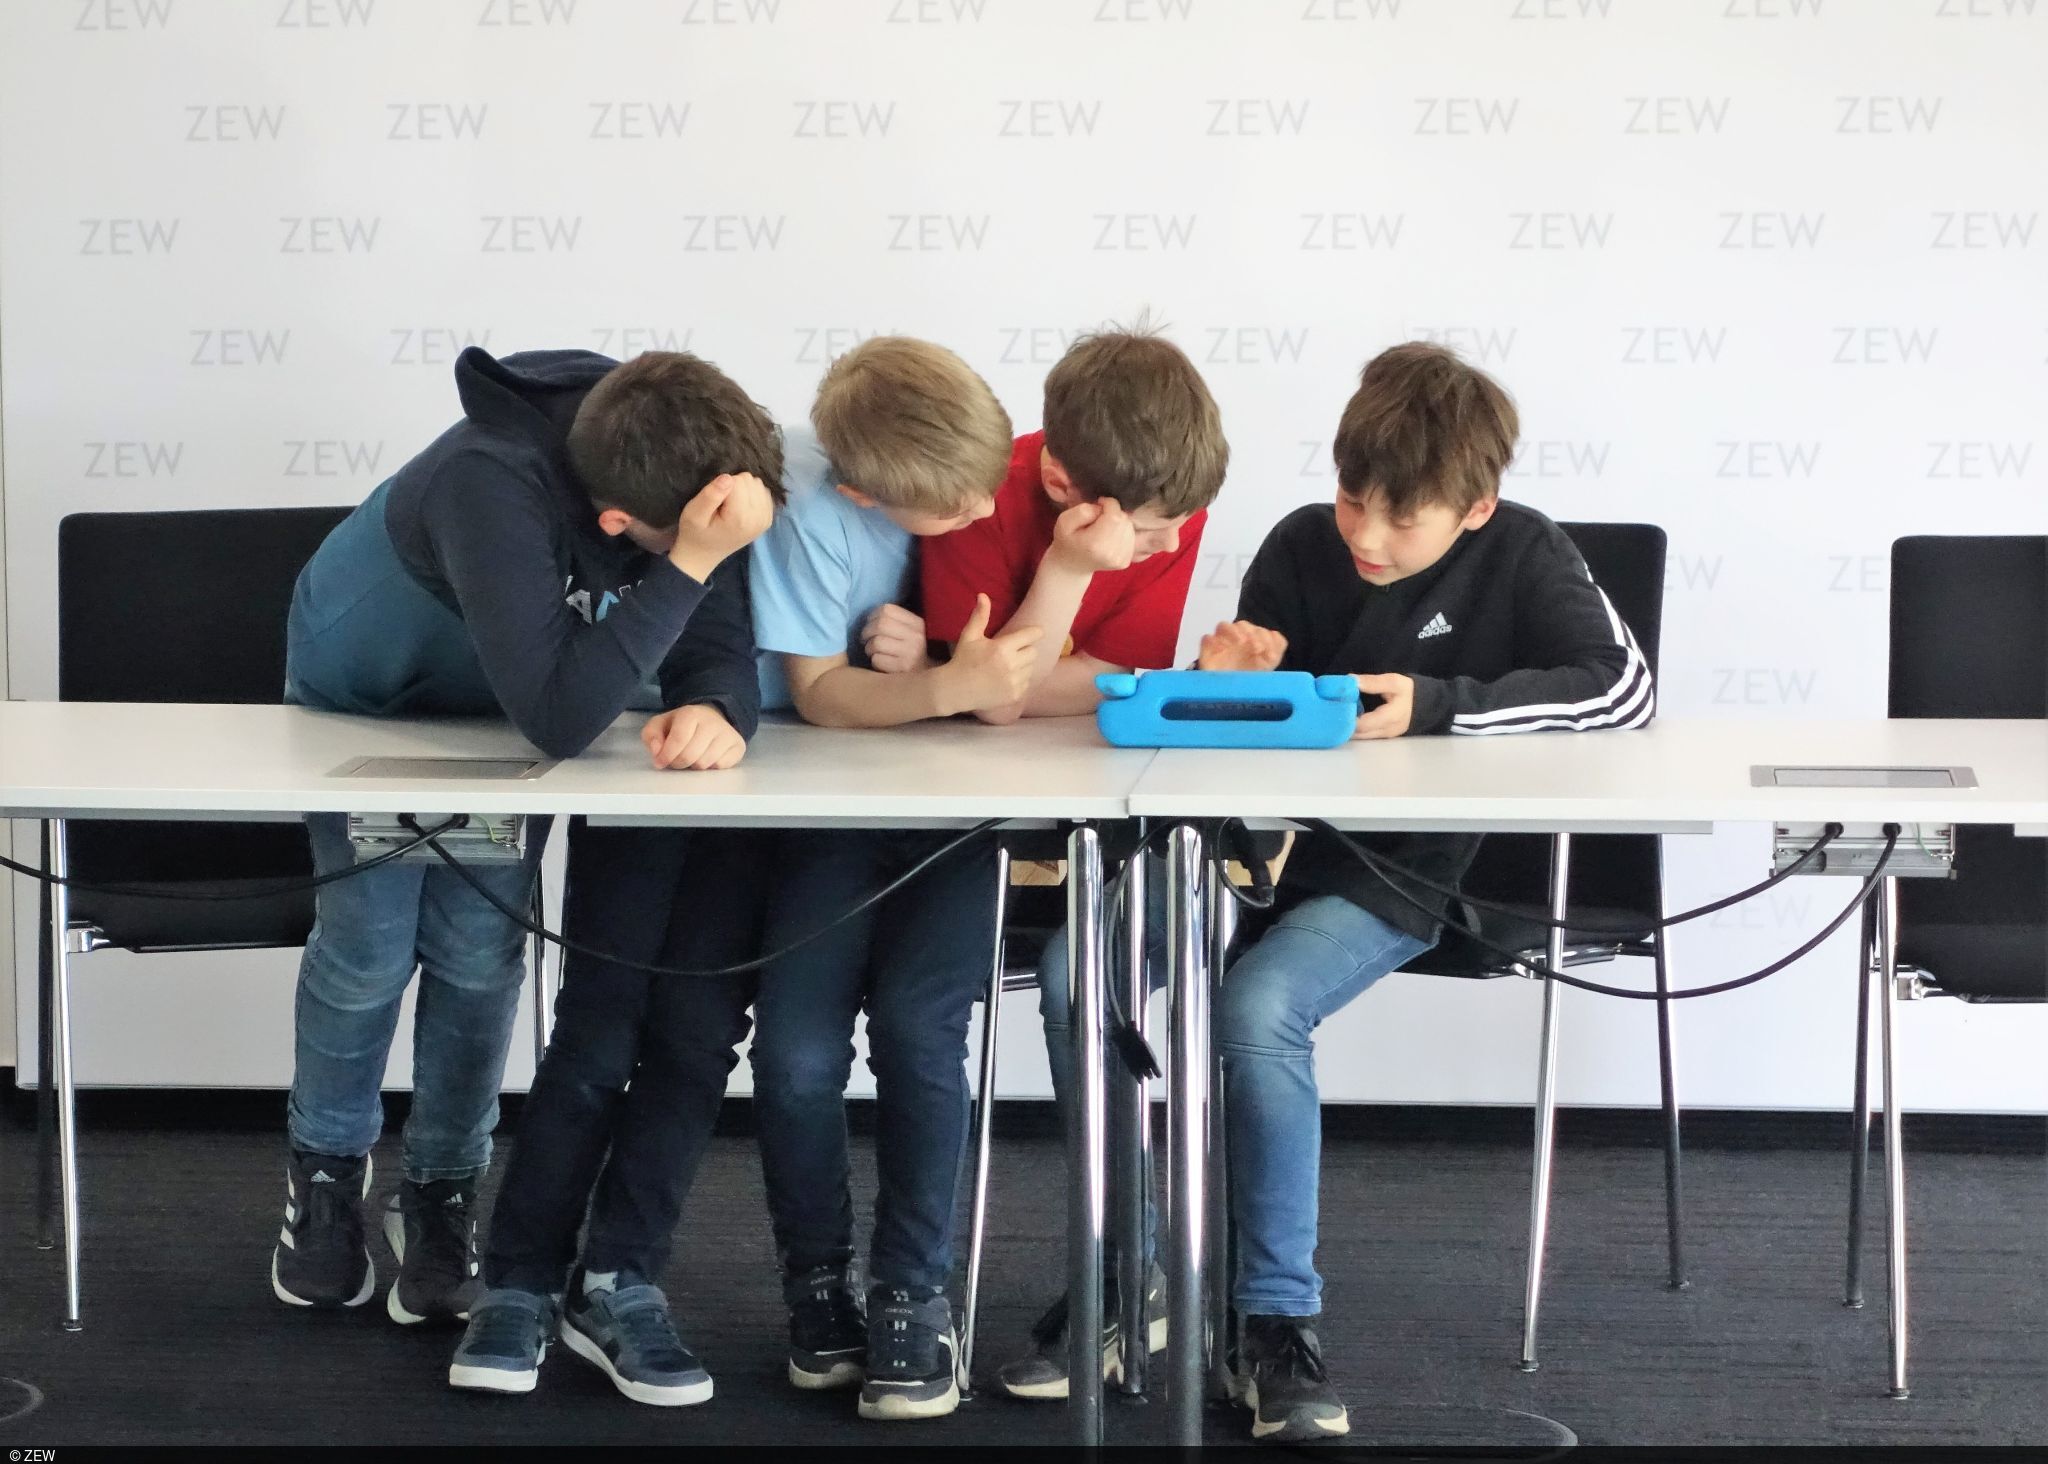 Kinder, die gemeinsam am Tisch sitzen/stehen und sich mit einem Tablet beschäftigen